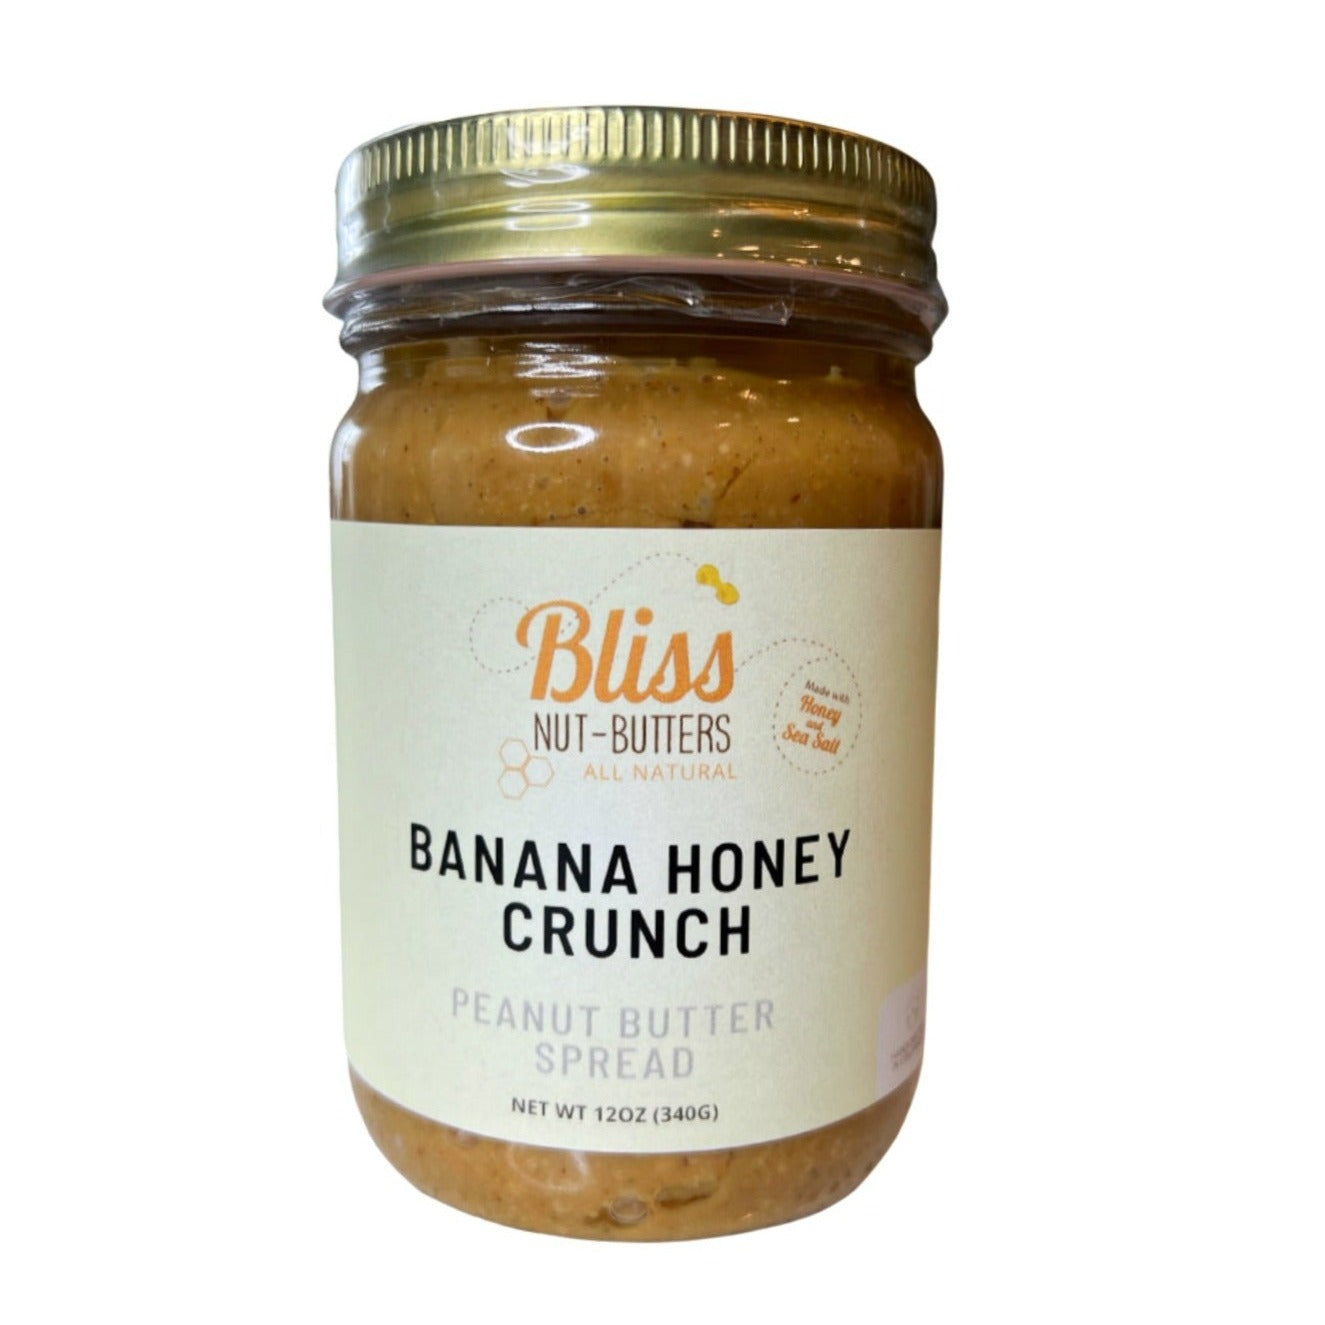 Banana Honey Crunch Peanut Butter